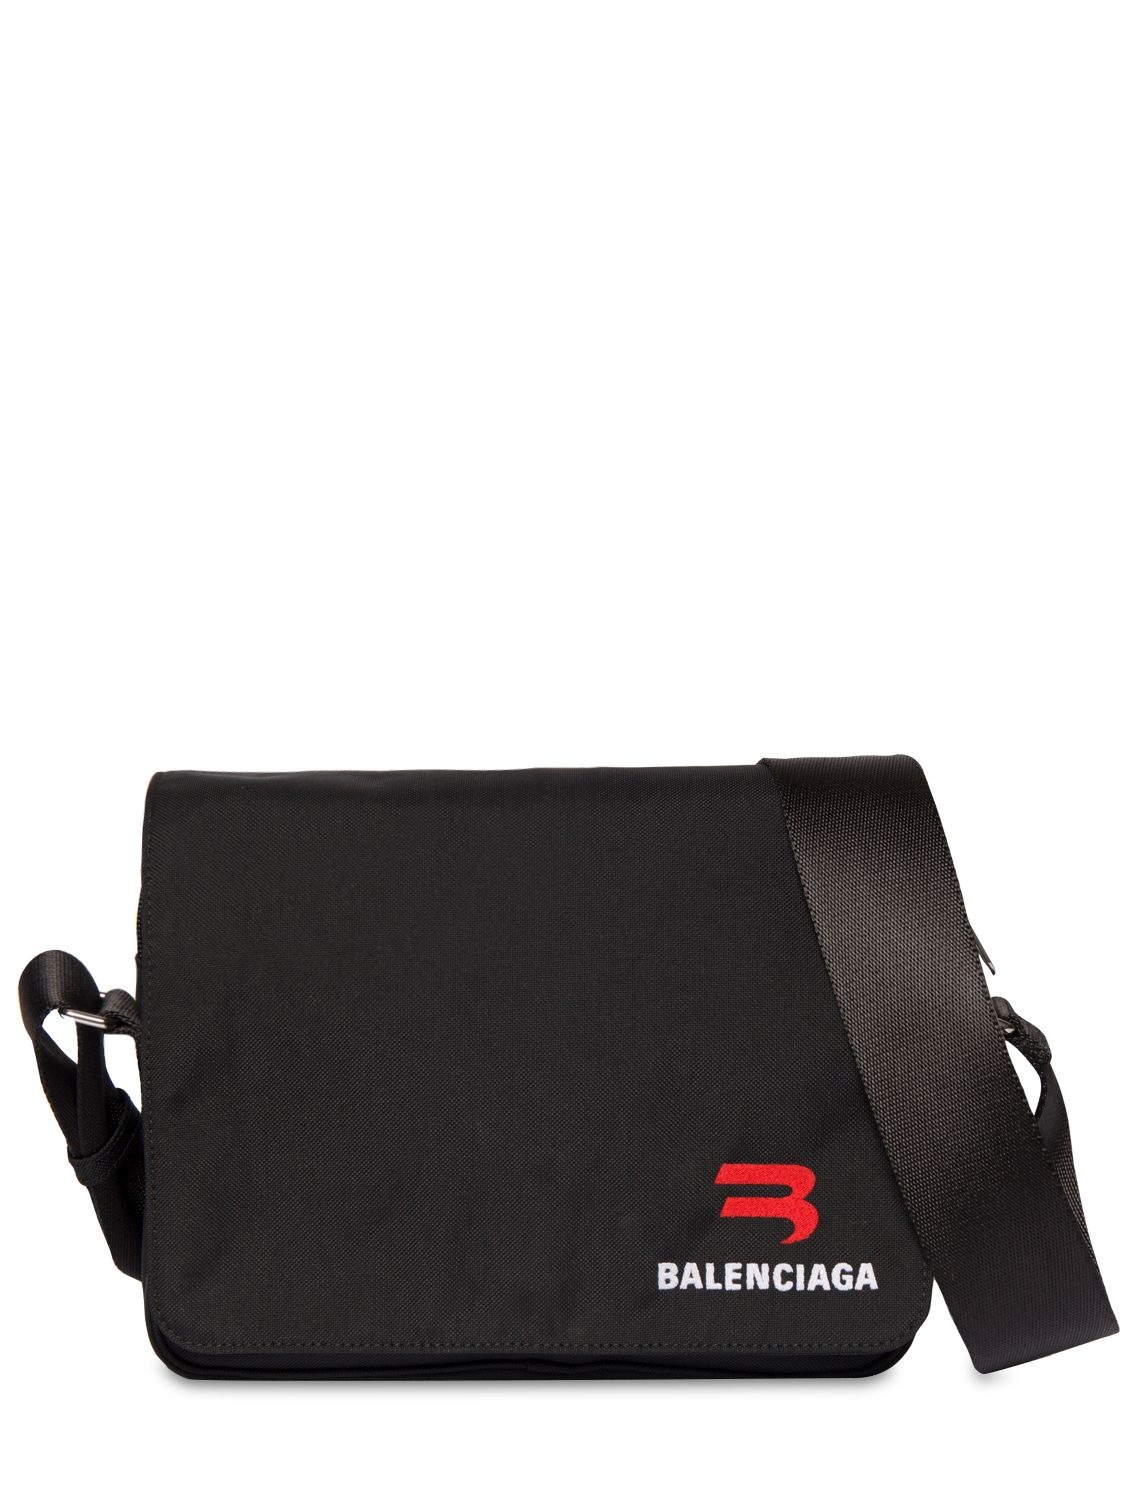 Explorer Embroidered Messenger Bag - BALENCIAGA - Modalova